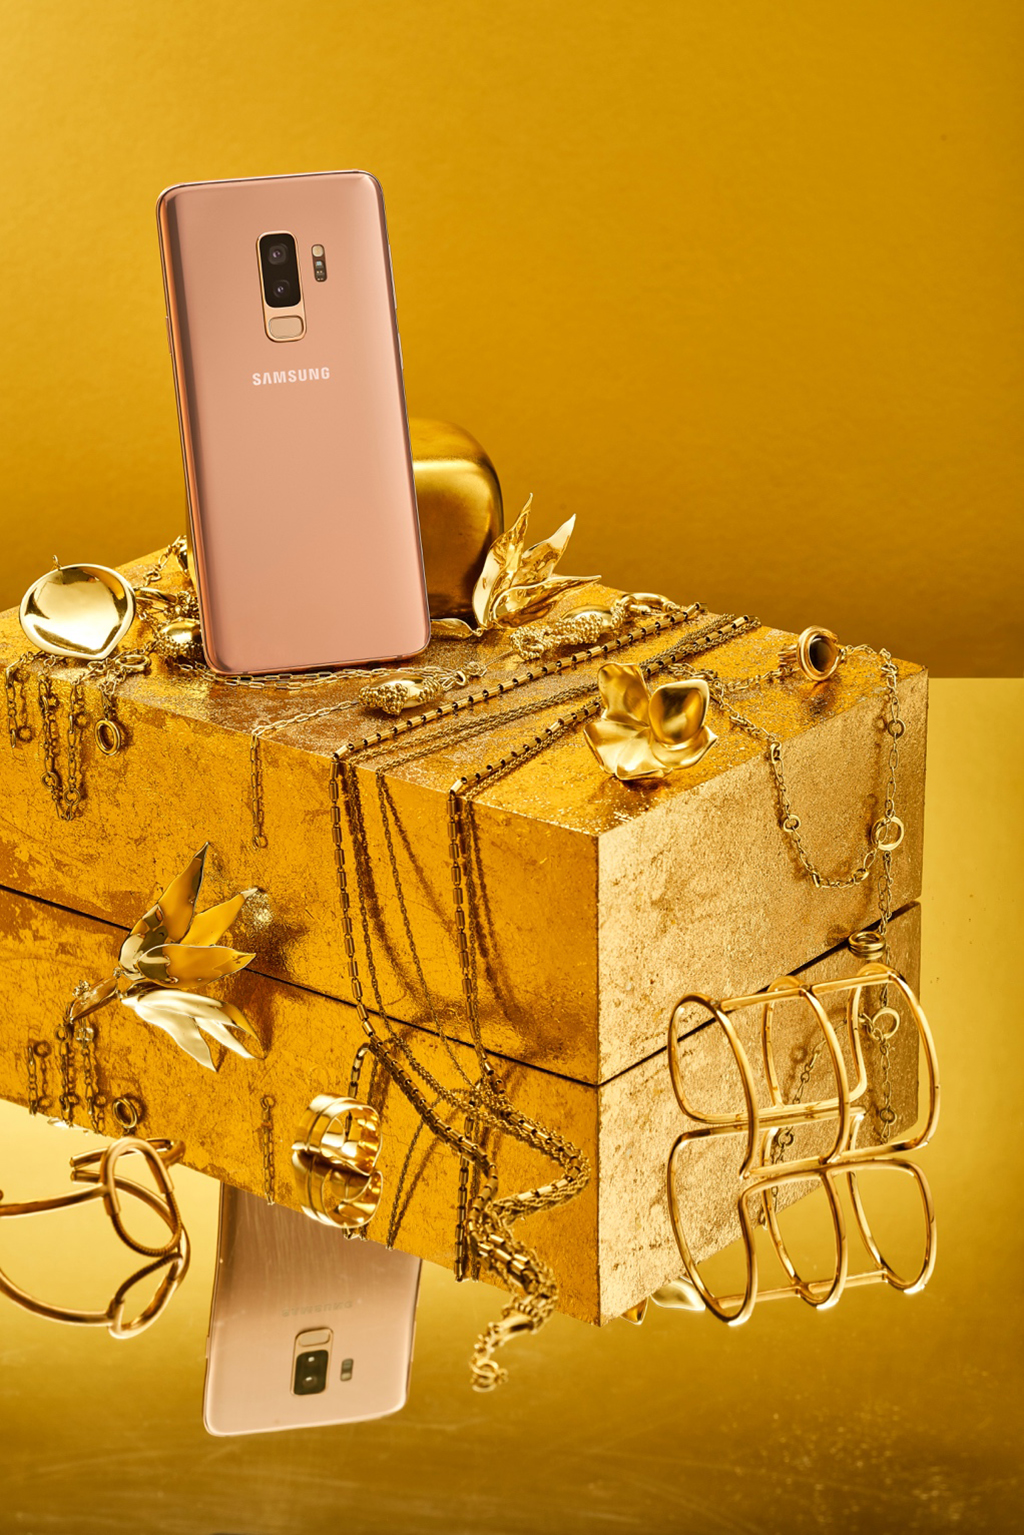 Giữa một kho báu phụ kiện quý giá, sang trọng, Galaxy S9+ Hoàng Kim vẫn không hề lép vế, mà lại nổi bật như một sự lựa chọn không thể thiếu của những ai đeo đuổi gu thời trang sang trọng, mạnh mẽ nhưng vẫn đầy mê hoặc. Màu sắc rực rỡ như ánh dương lúc hừng đông, biến hóa màu sắc đa dạng tùy theo điều kiện ánh sáng, Galaxy S9 thật sự là món phụ kiện “chuẩn vàng”